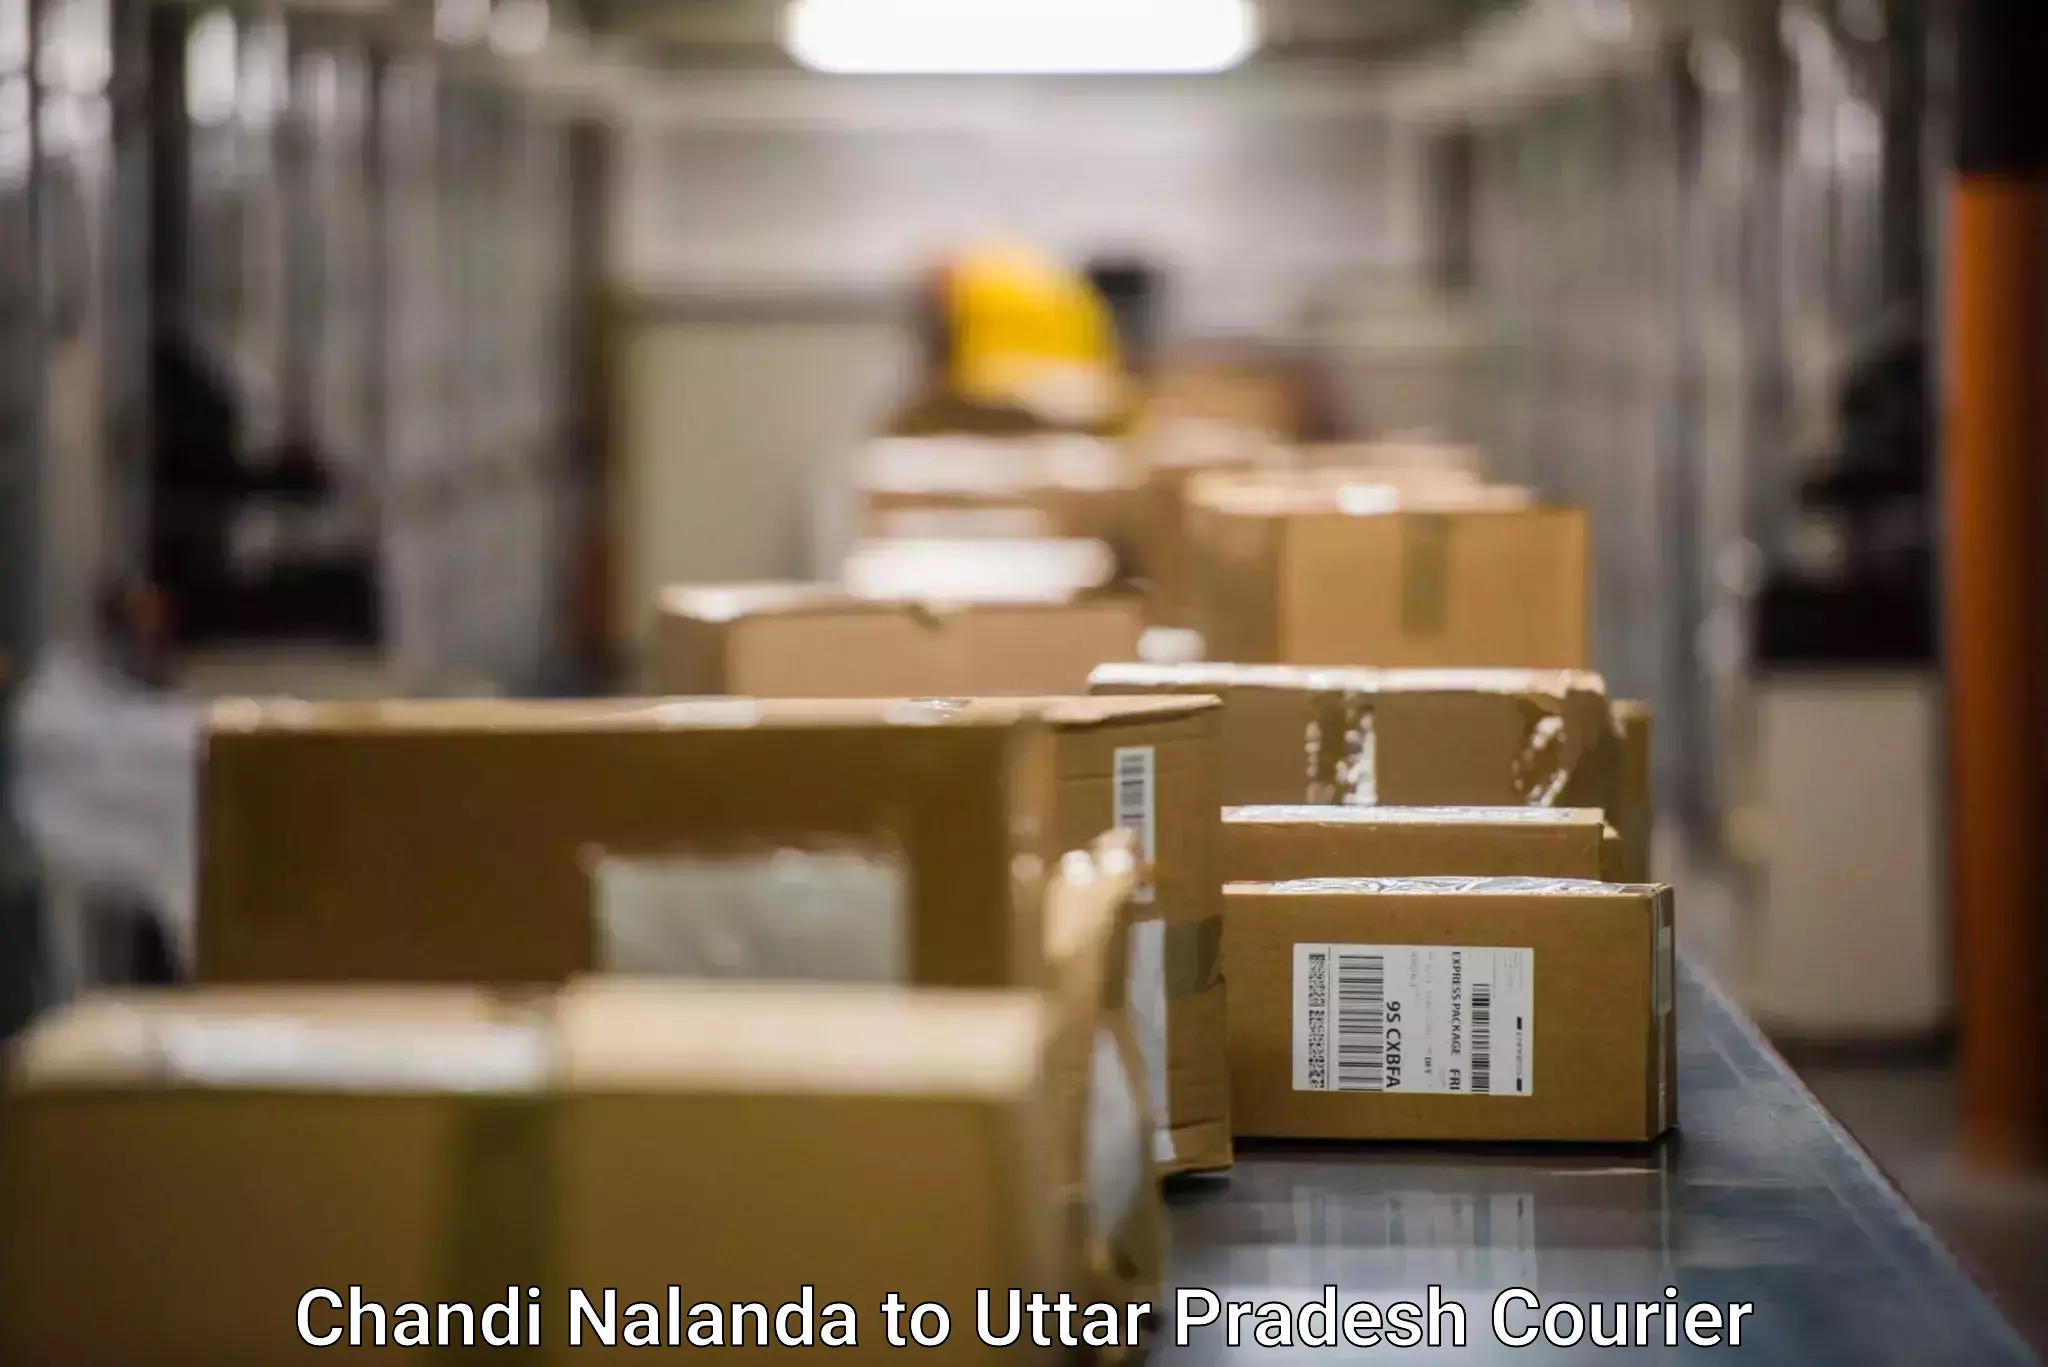 Professional courier handling Chandi Nalanda to Uttar Pradesh